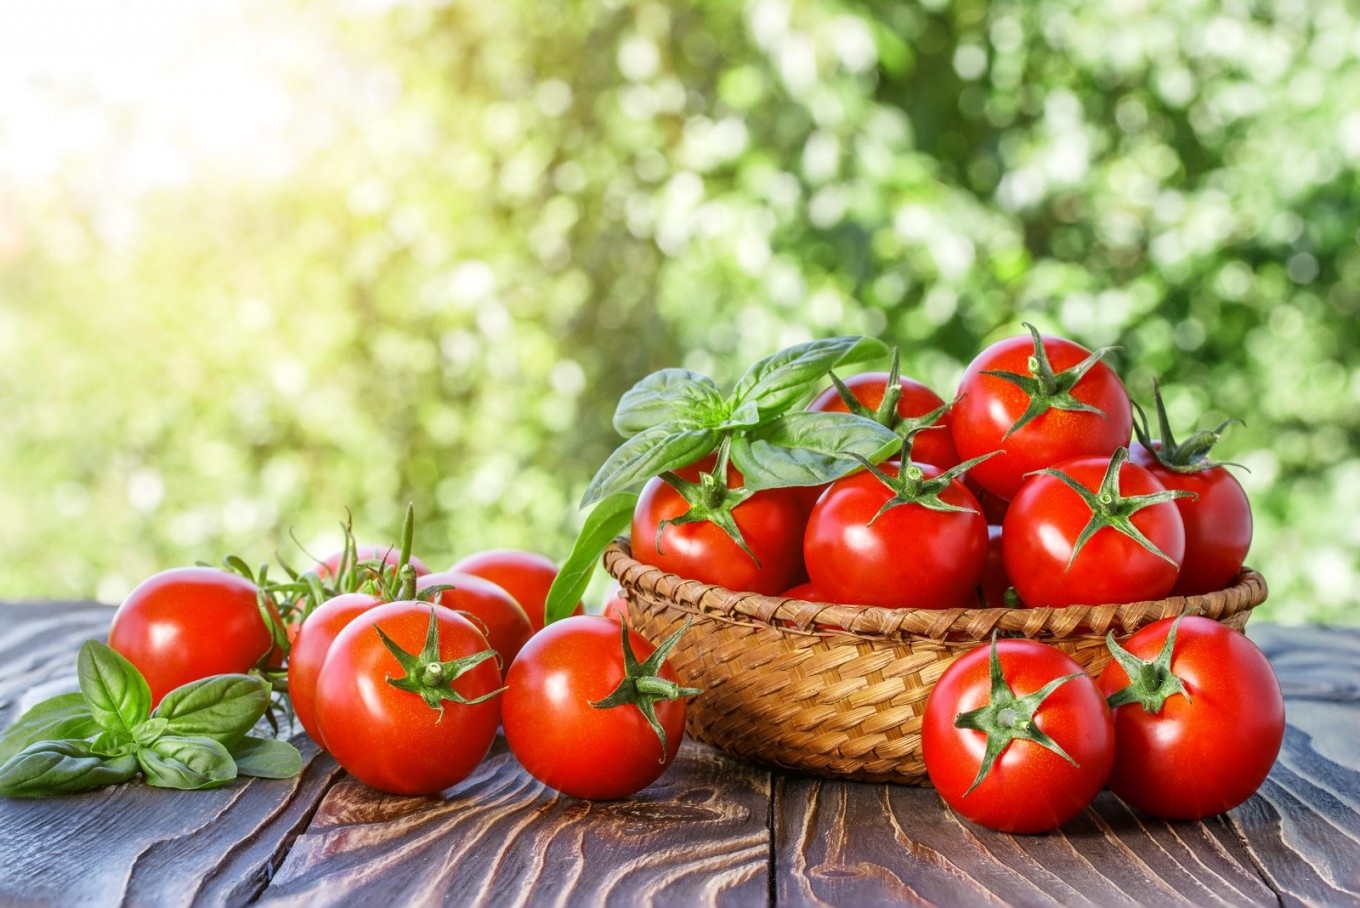 Ölkənin pomidor ixracından gəliri 11 milyon dollar azalıb